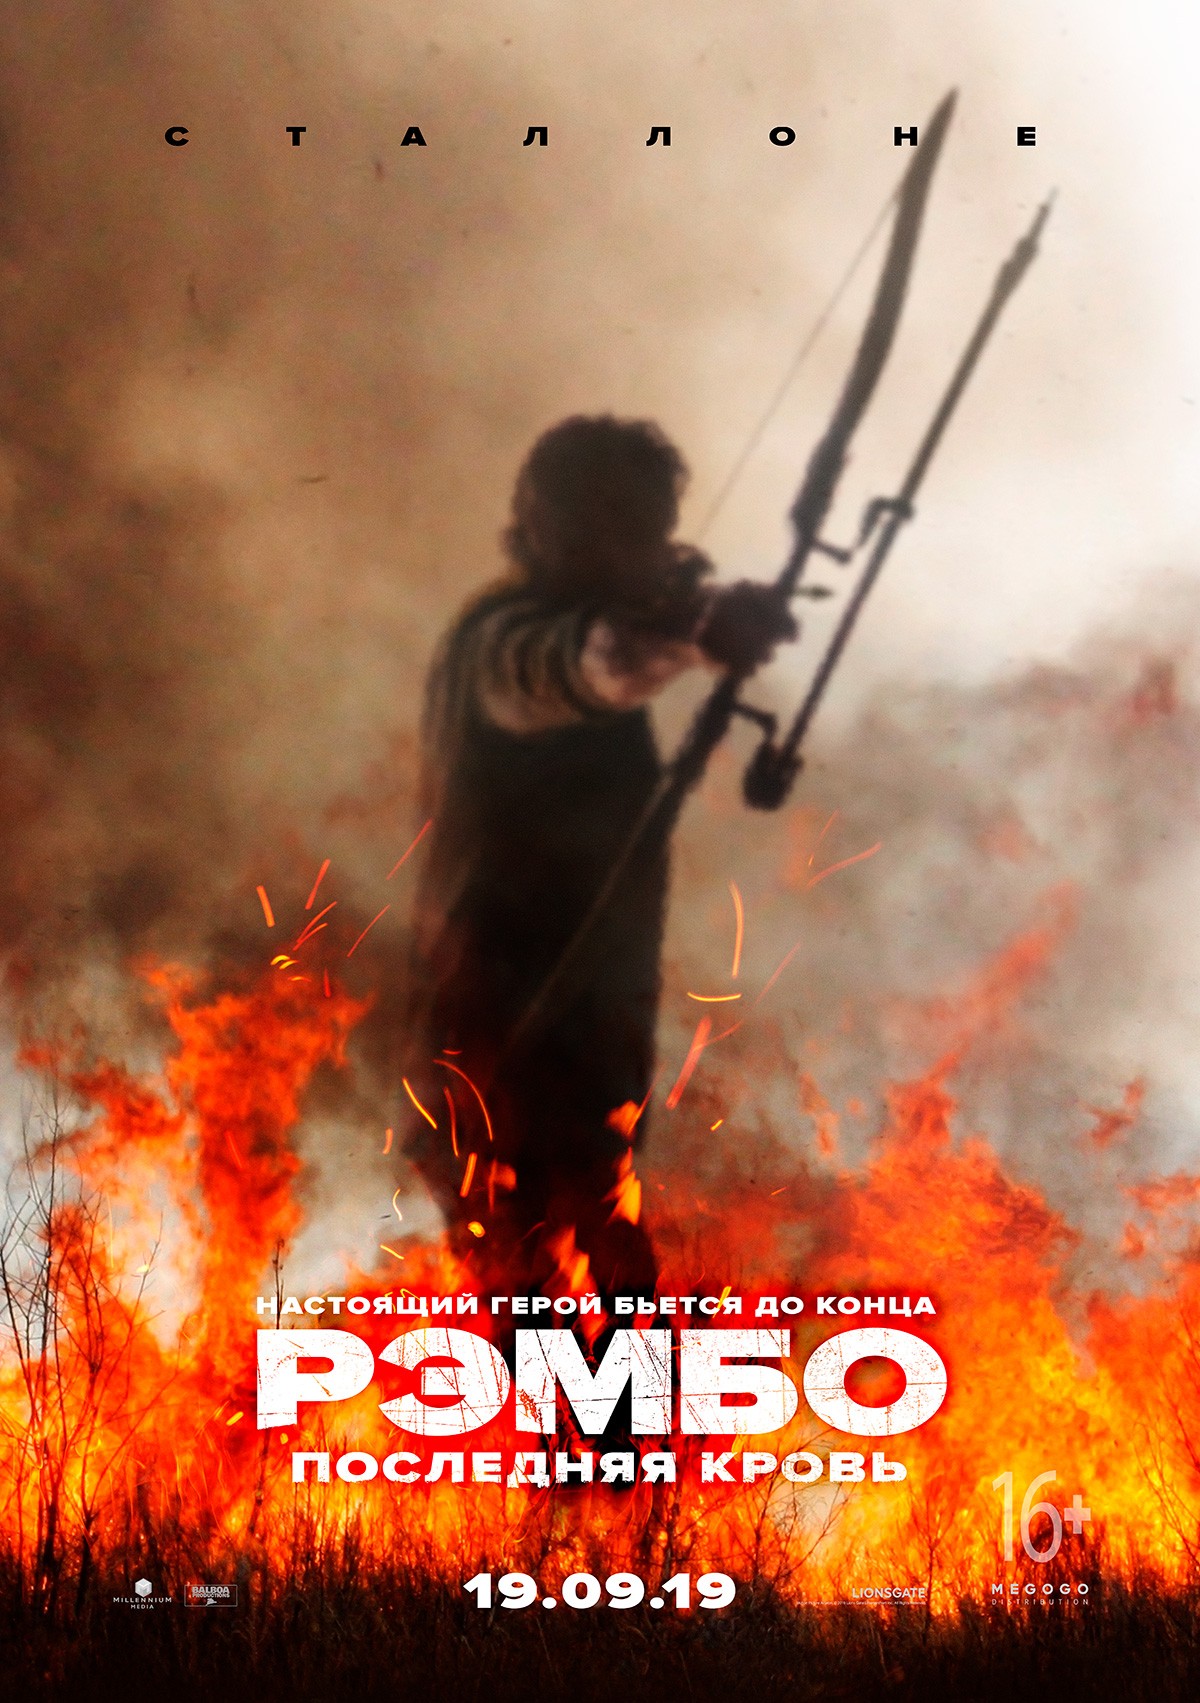 Рэмбо 5: Последняя кровь / Rambo 5: Last Blood (2019) отзывы. Рецензии. Новости кино. Актеры фильма Рэмбо 5: Последняя кровь. Отзывы о фильме Рэмбо 5: Последняя кровь